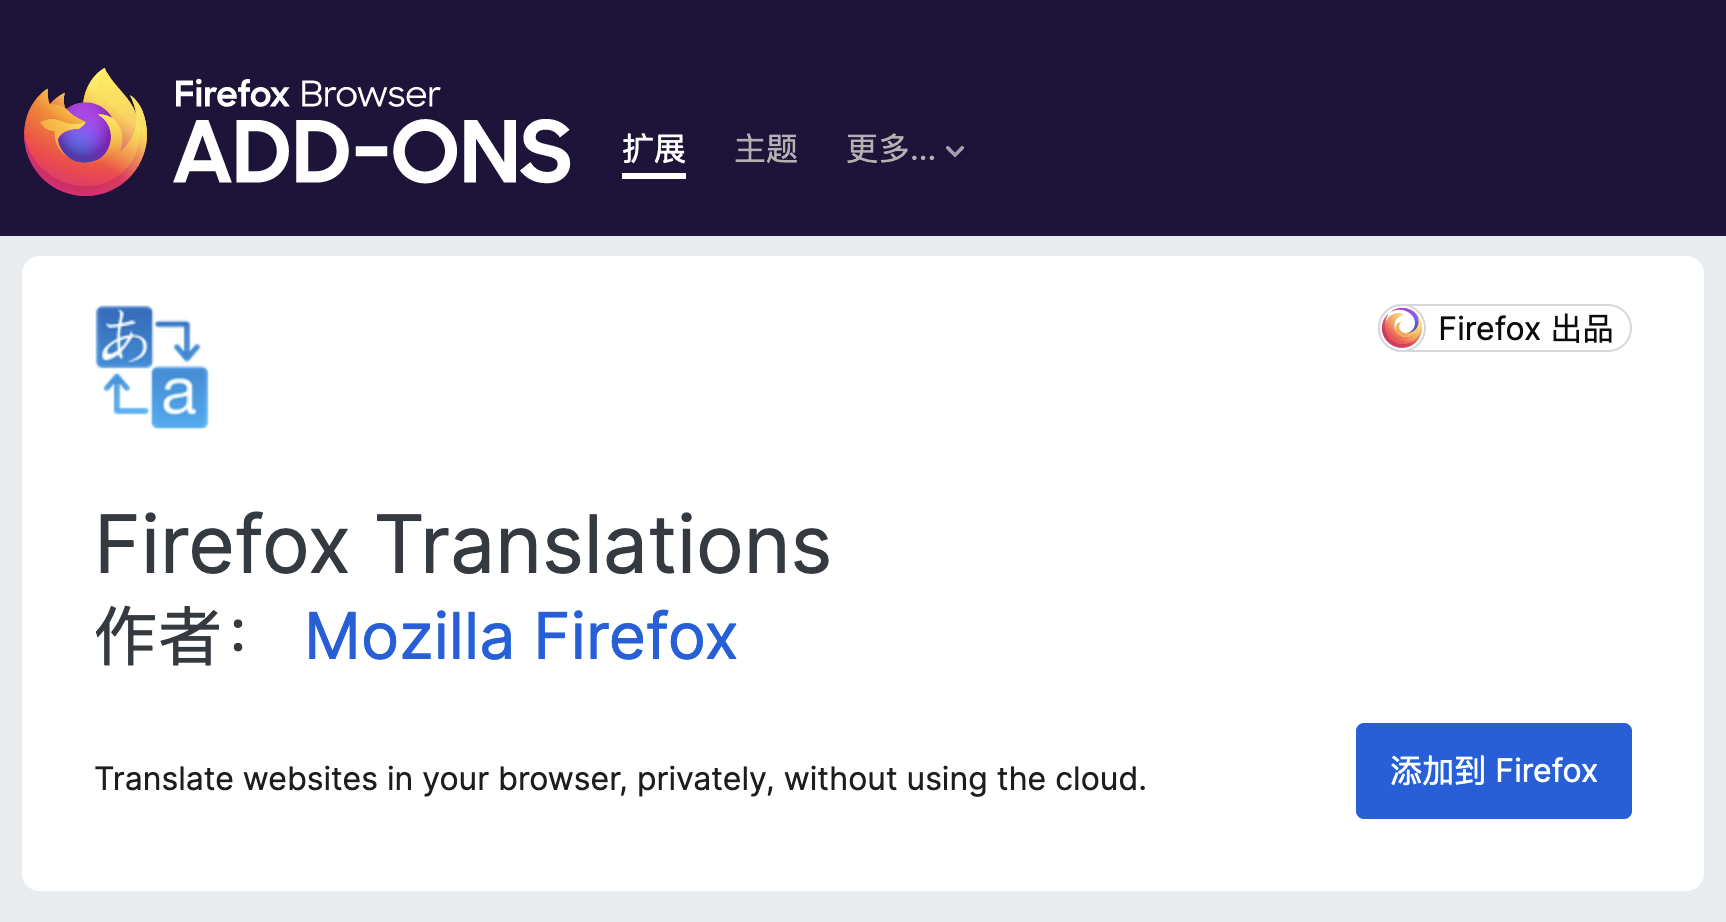 无需下载扩展，Firefox 将直接集成翻译功能